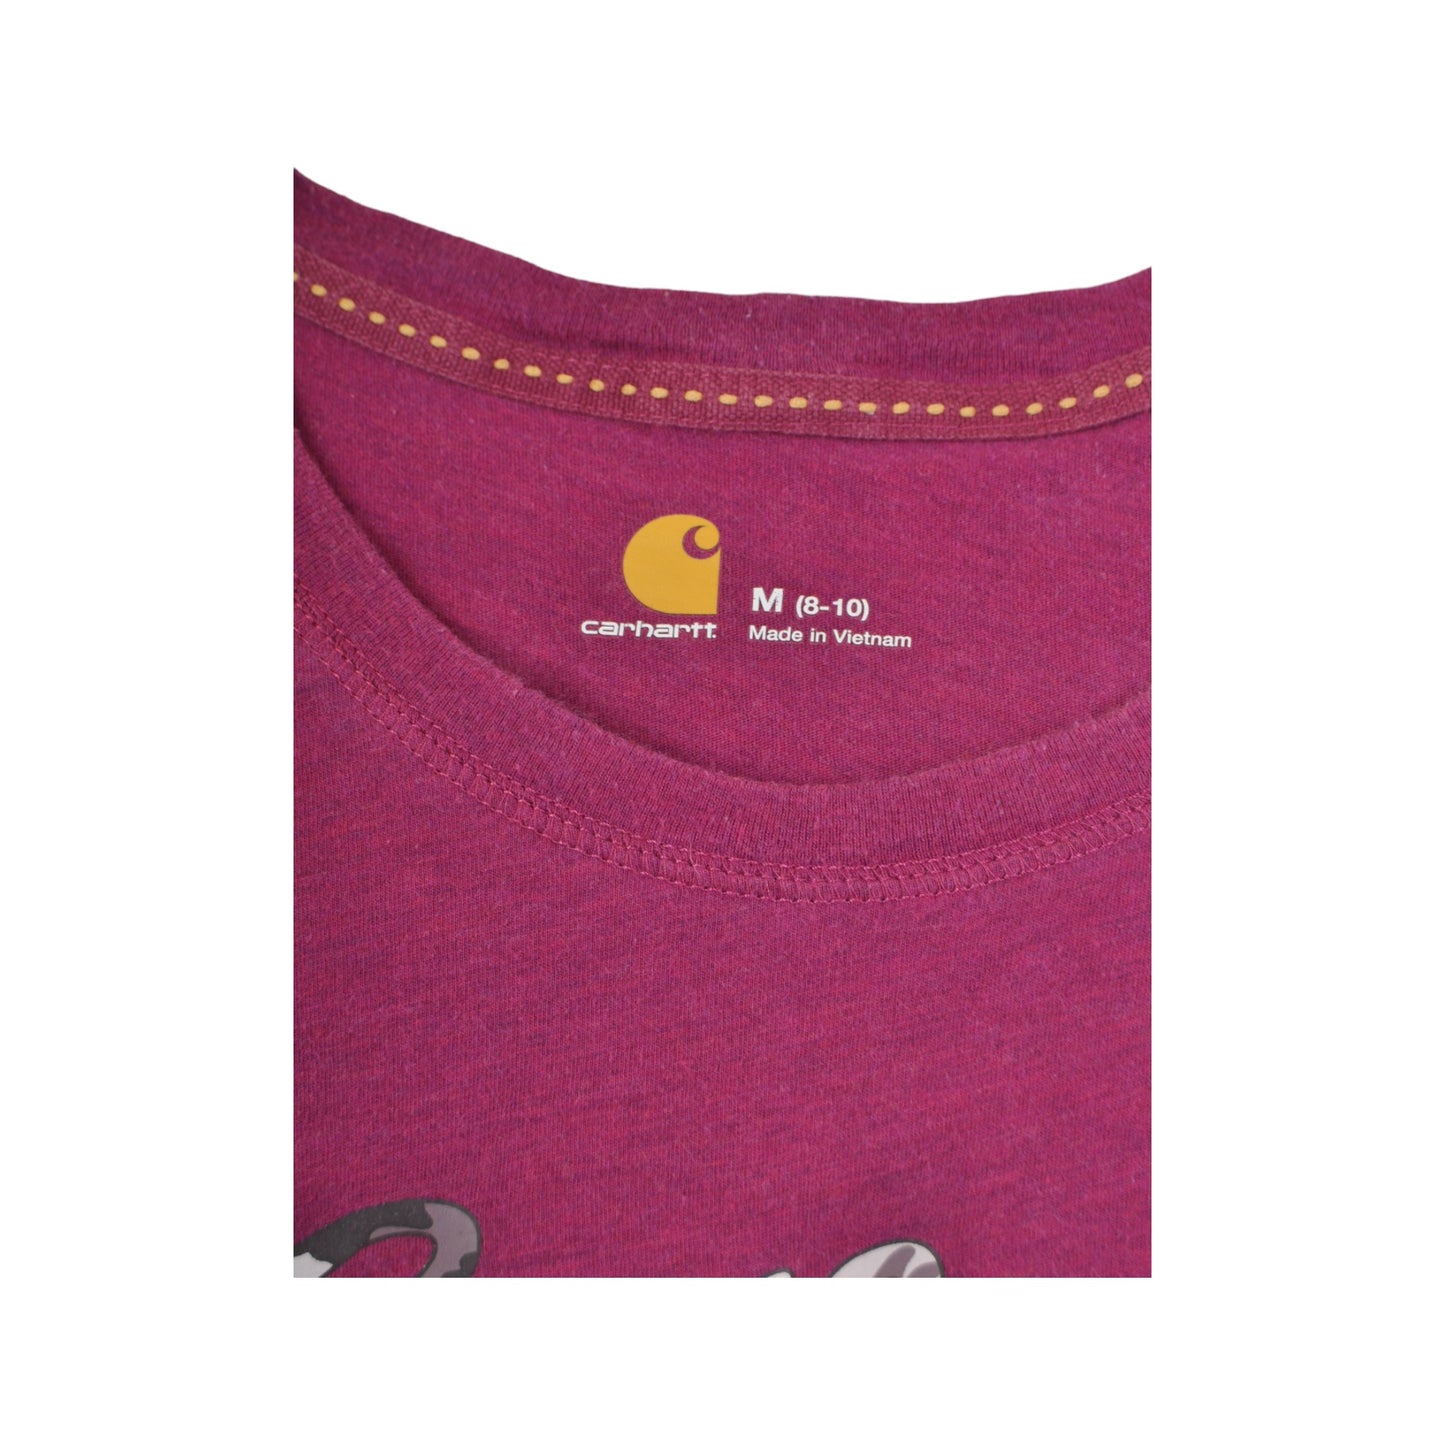 Vintage Carhartt T-Shirt Purple Ladies Medium